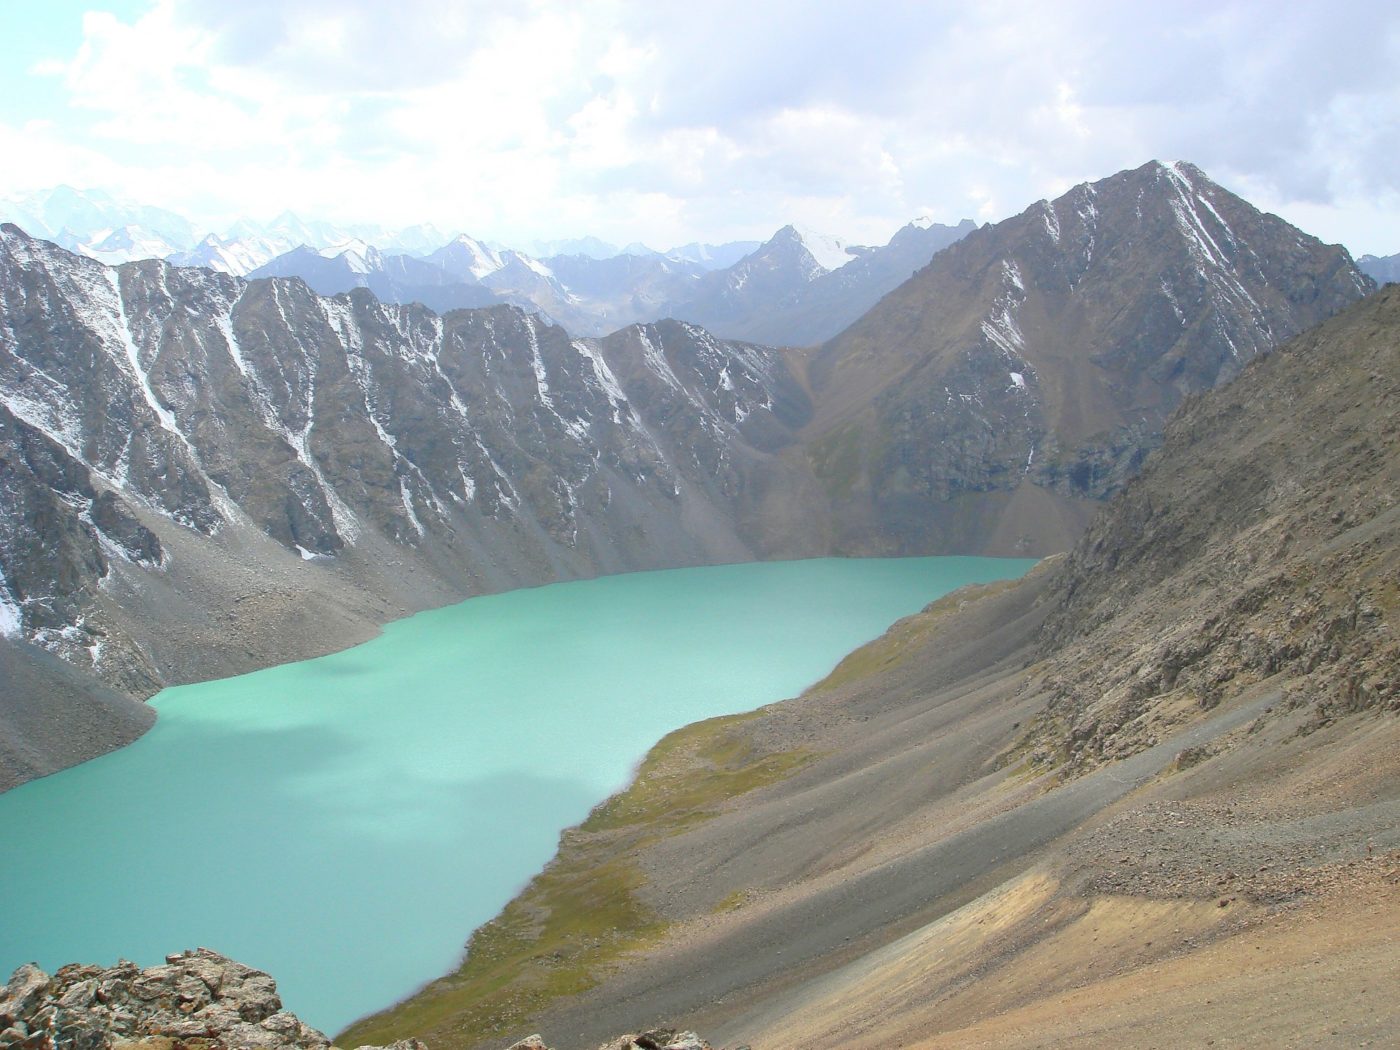 Picture of Ala köl lake, Kyrgyzstan